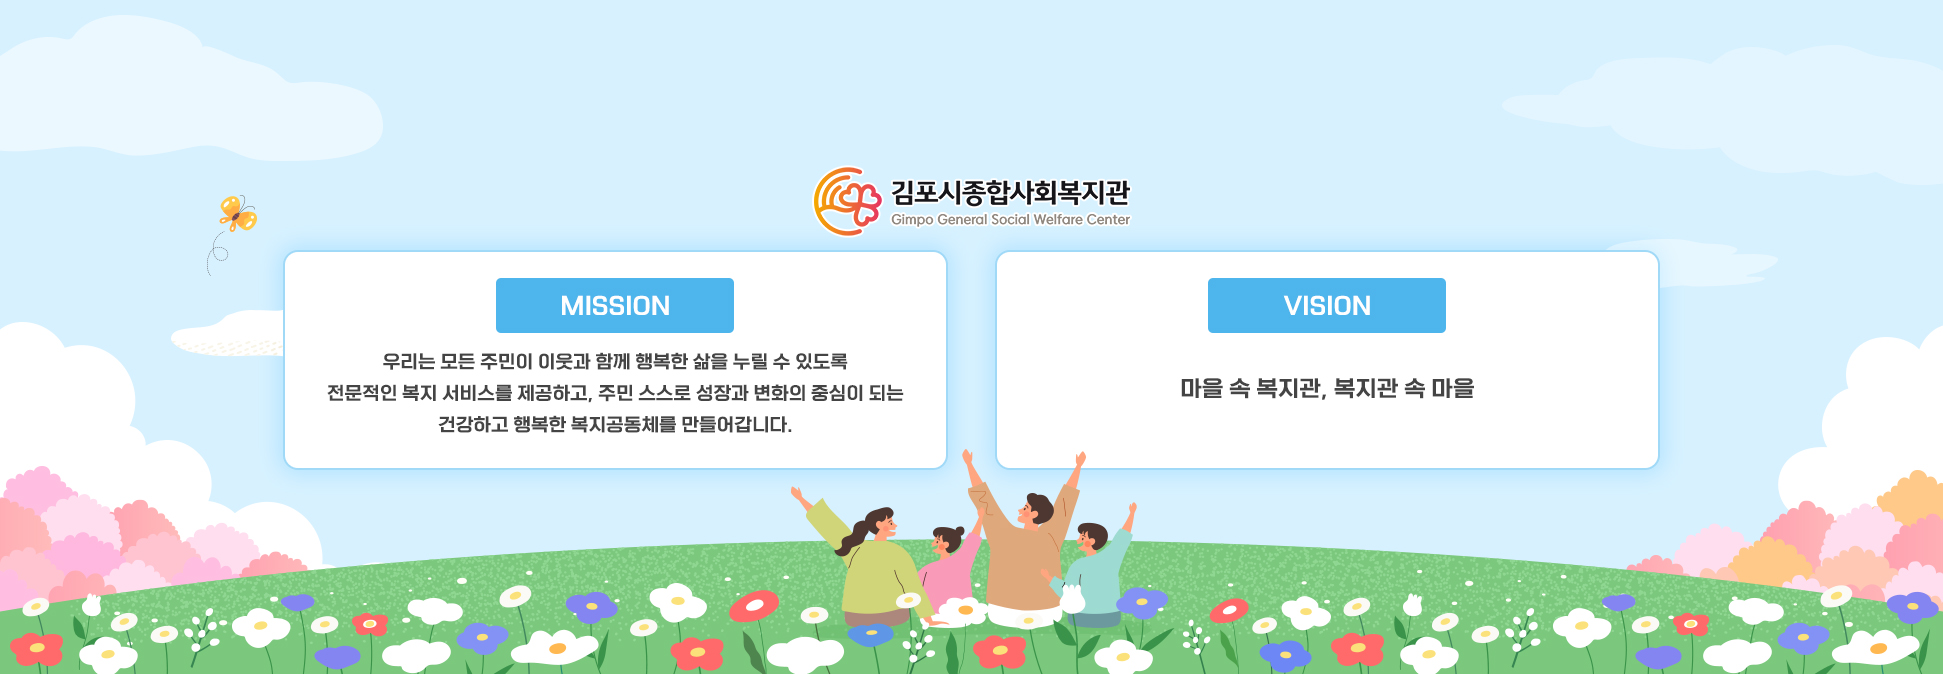 김포시종합사회복지관 미션/비전